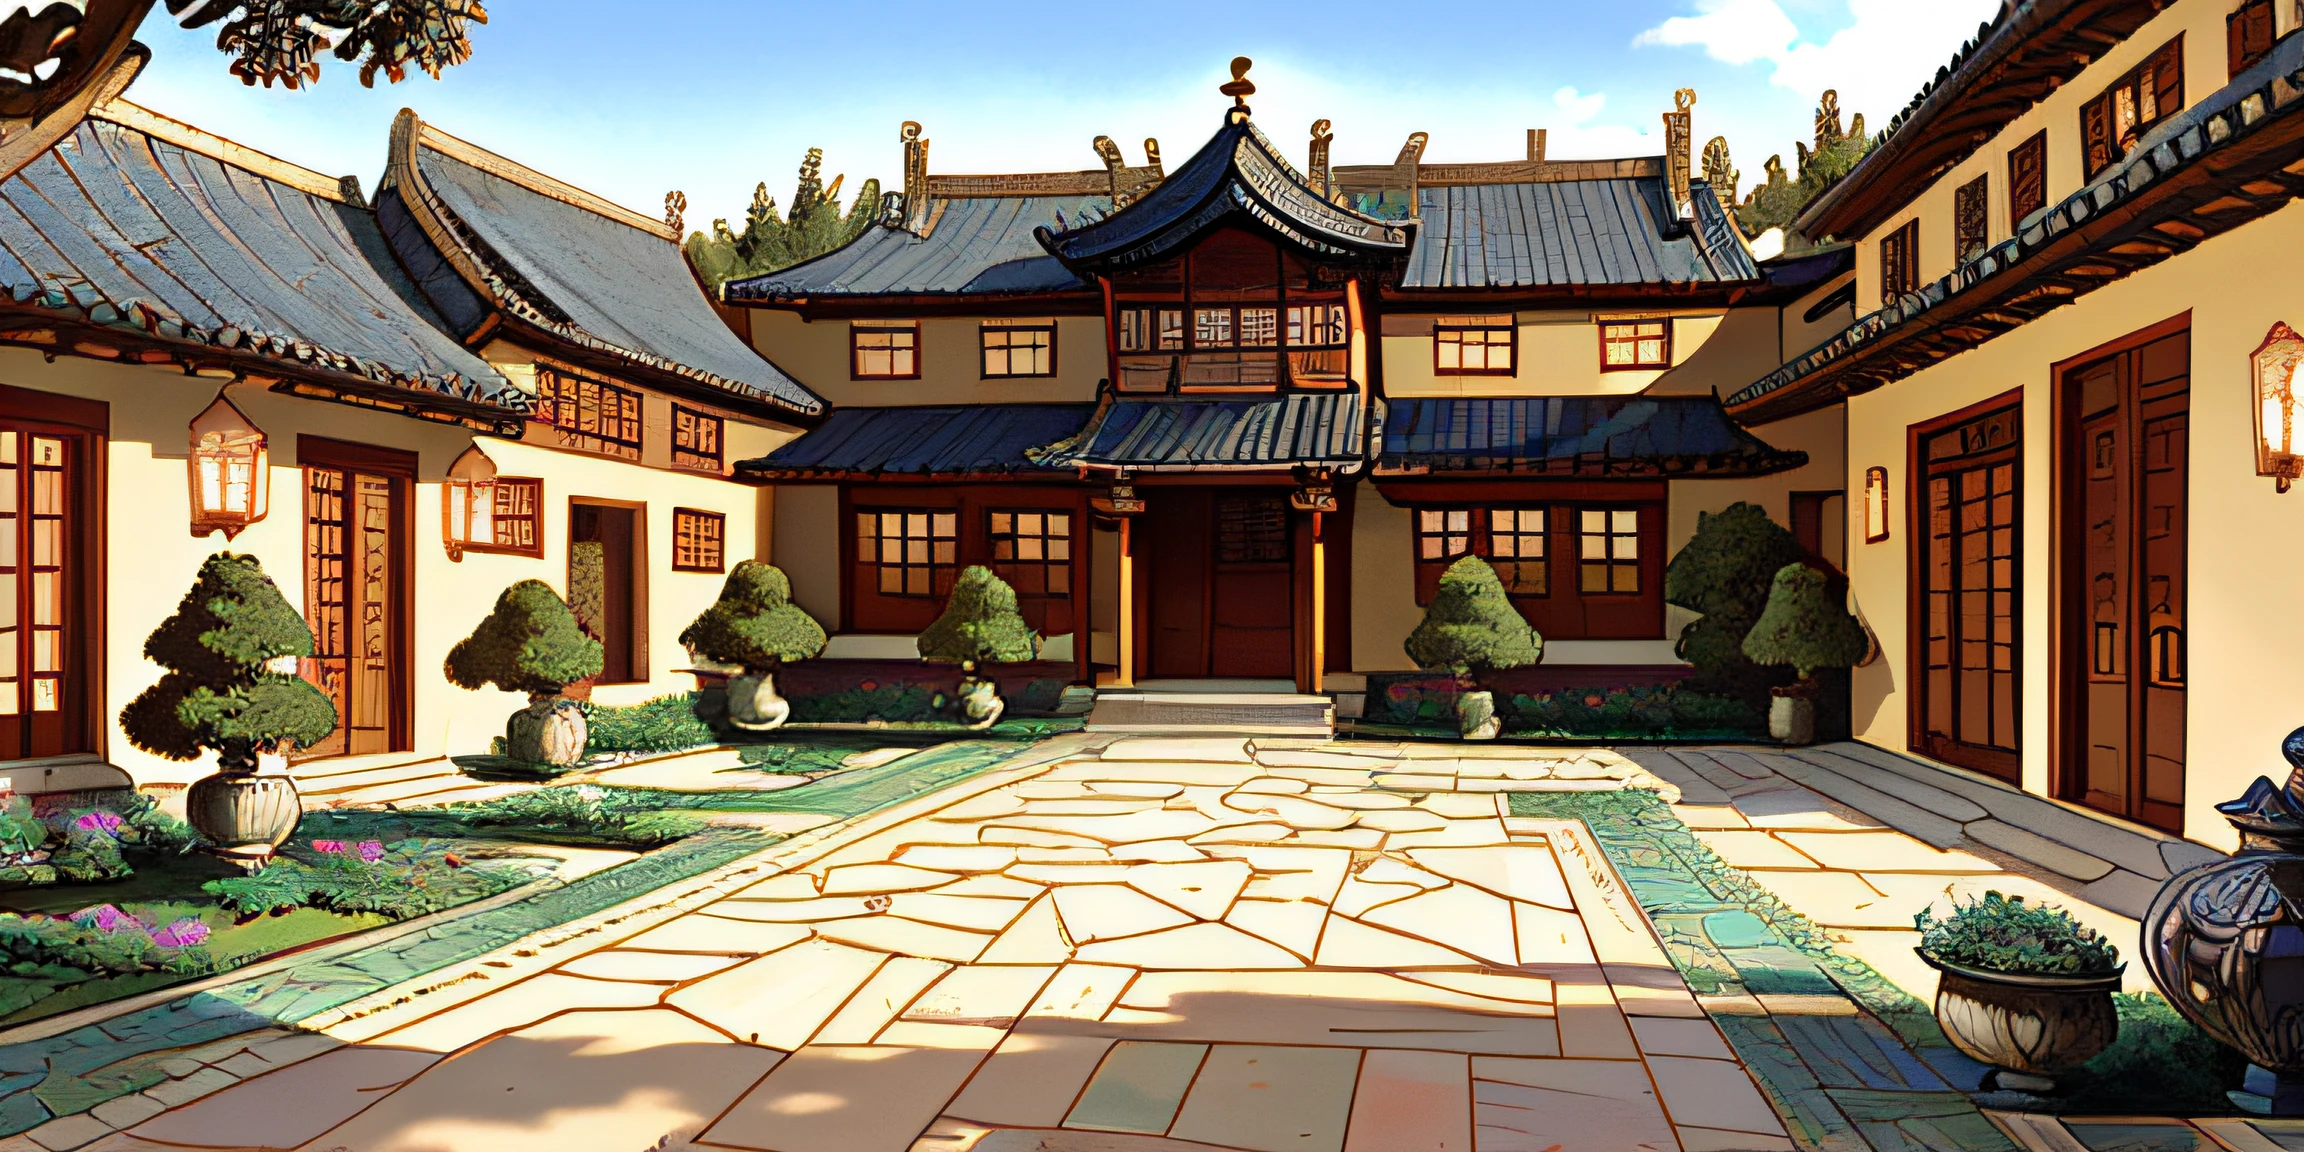 傑作, 最高の品質, 高品質, 非常に詳細な, 中国の中庭の列, 中庭の壁はブルーストーンまたは他の石でできています, そしてスタッフの門は木でできています